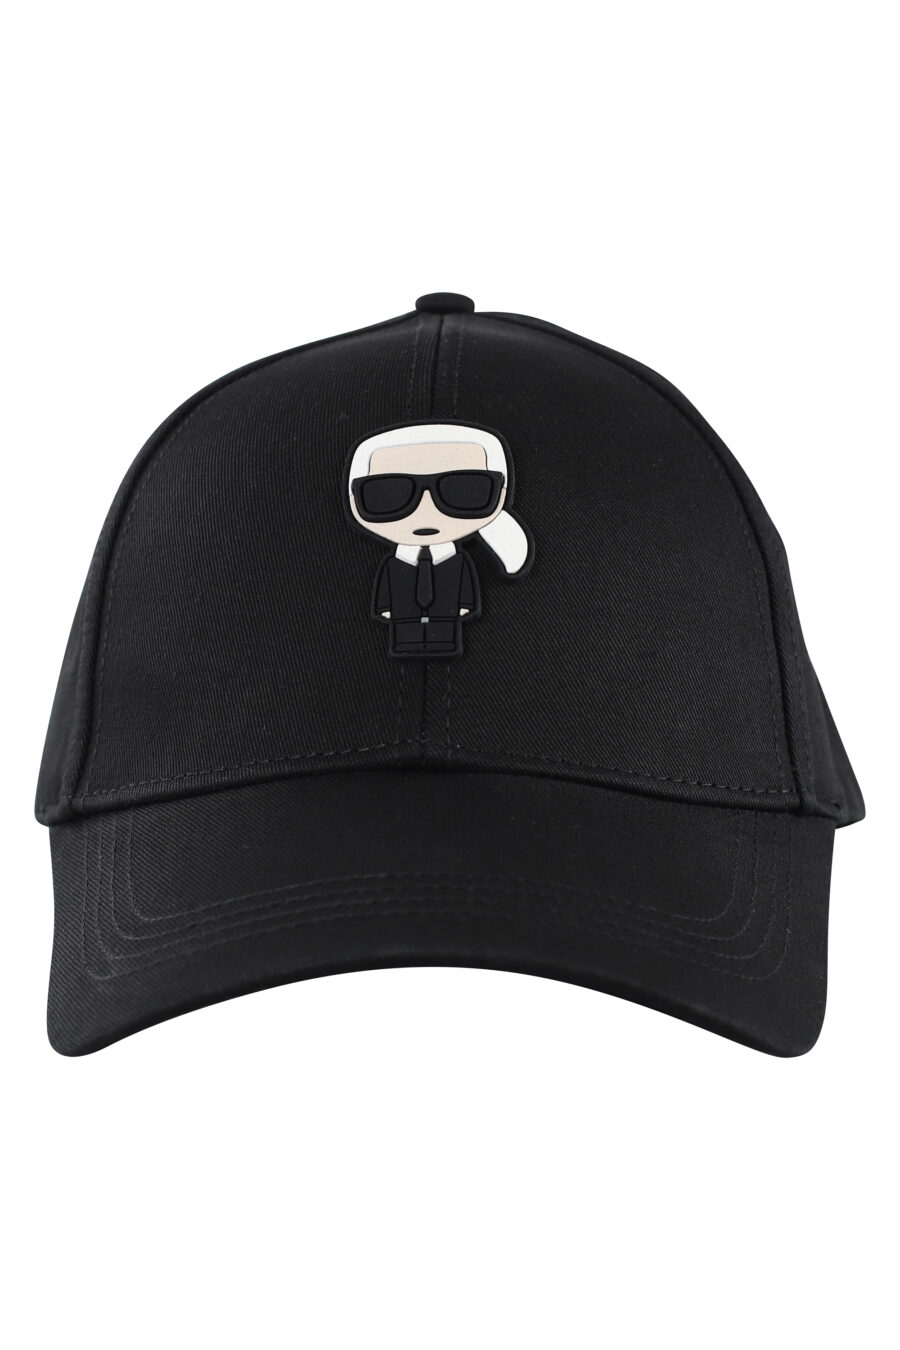 Gorra negra con logo de goma grande - IMG 7073